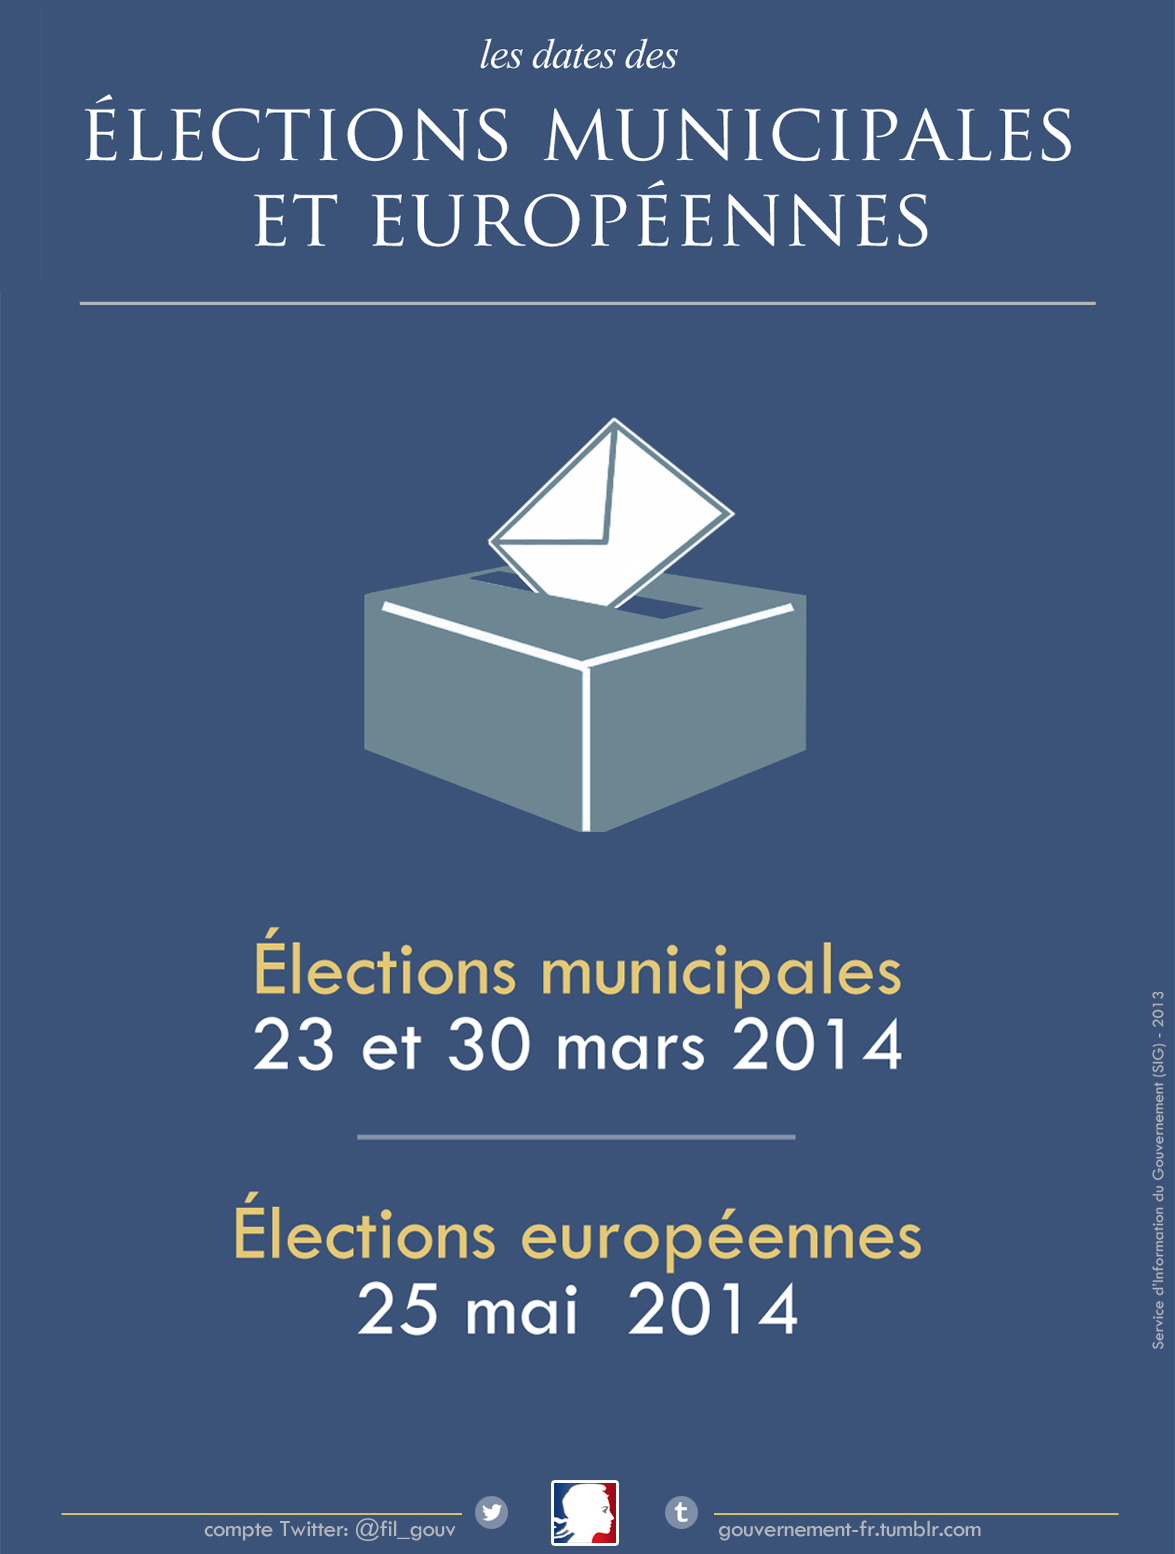 Les dates des élections municipales et européennes de 2014